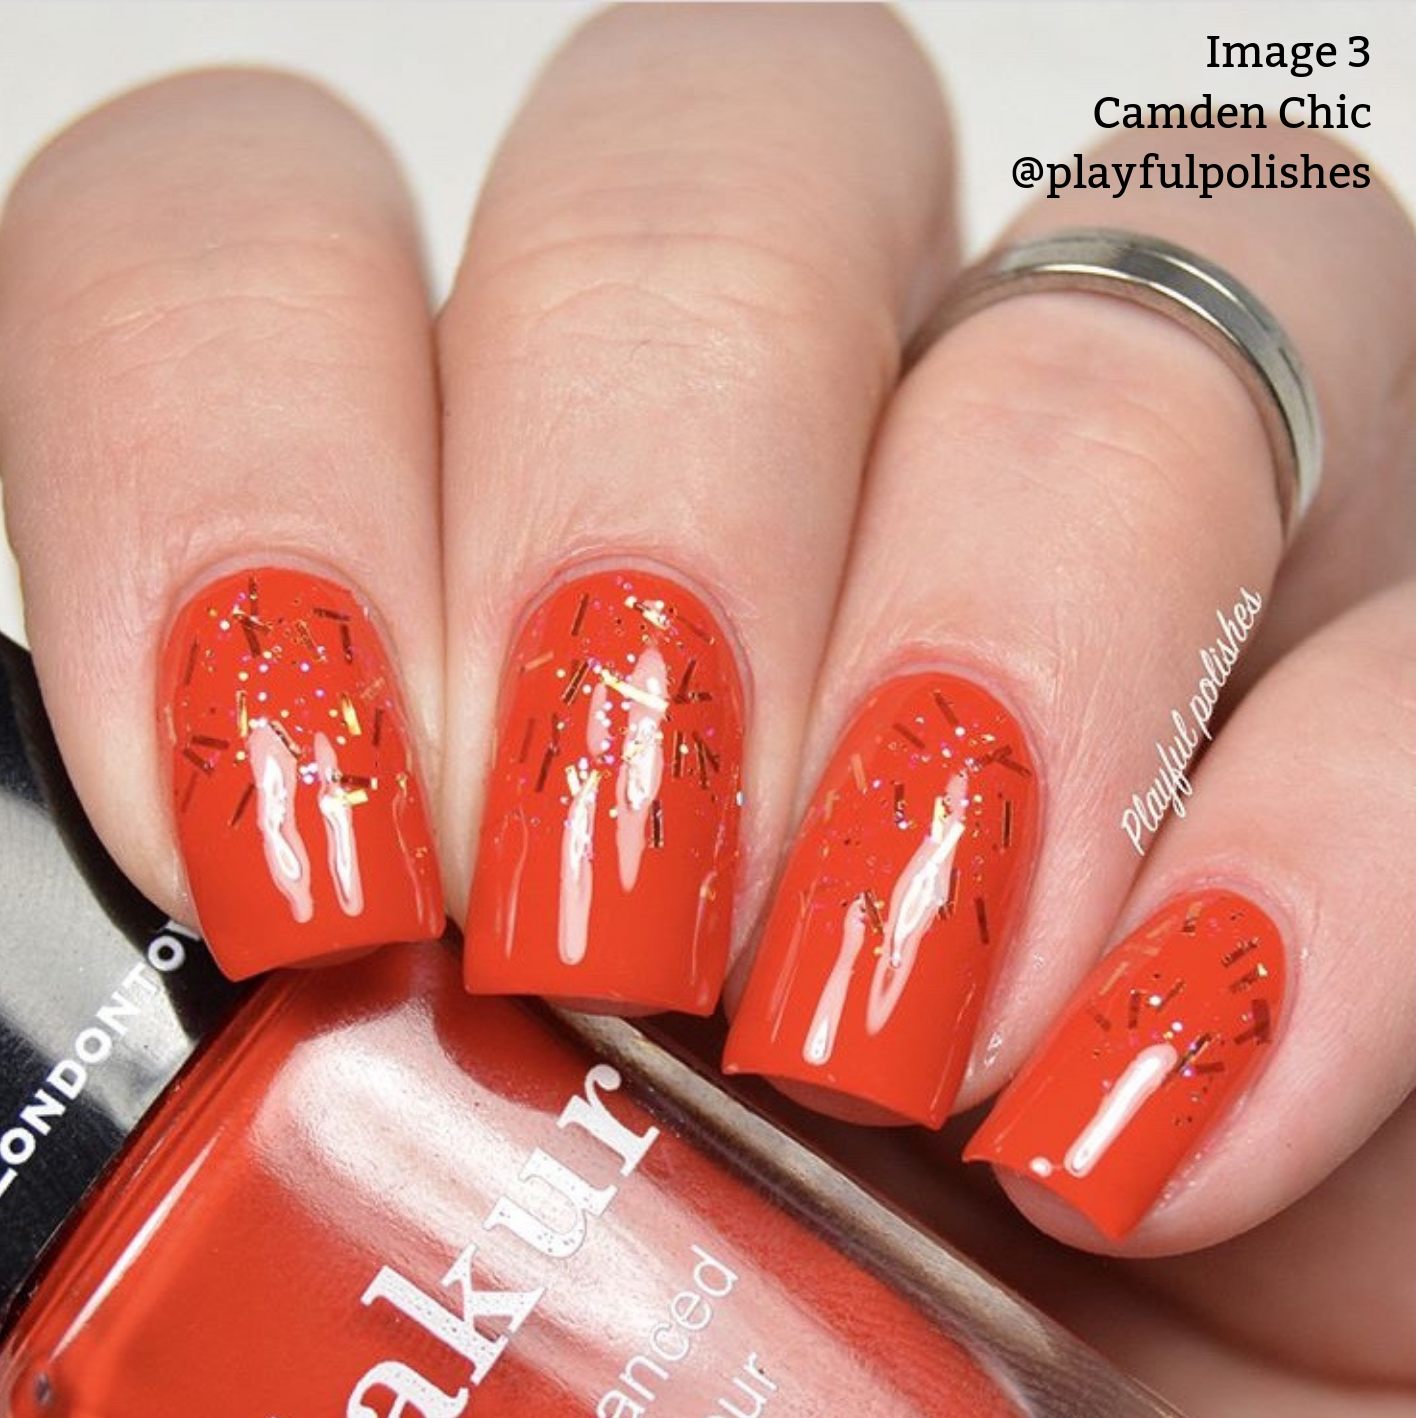 Camden Chic Nail Color | Gel-Like Nail Polish - Sumiye Co